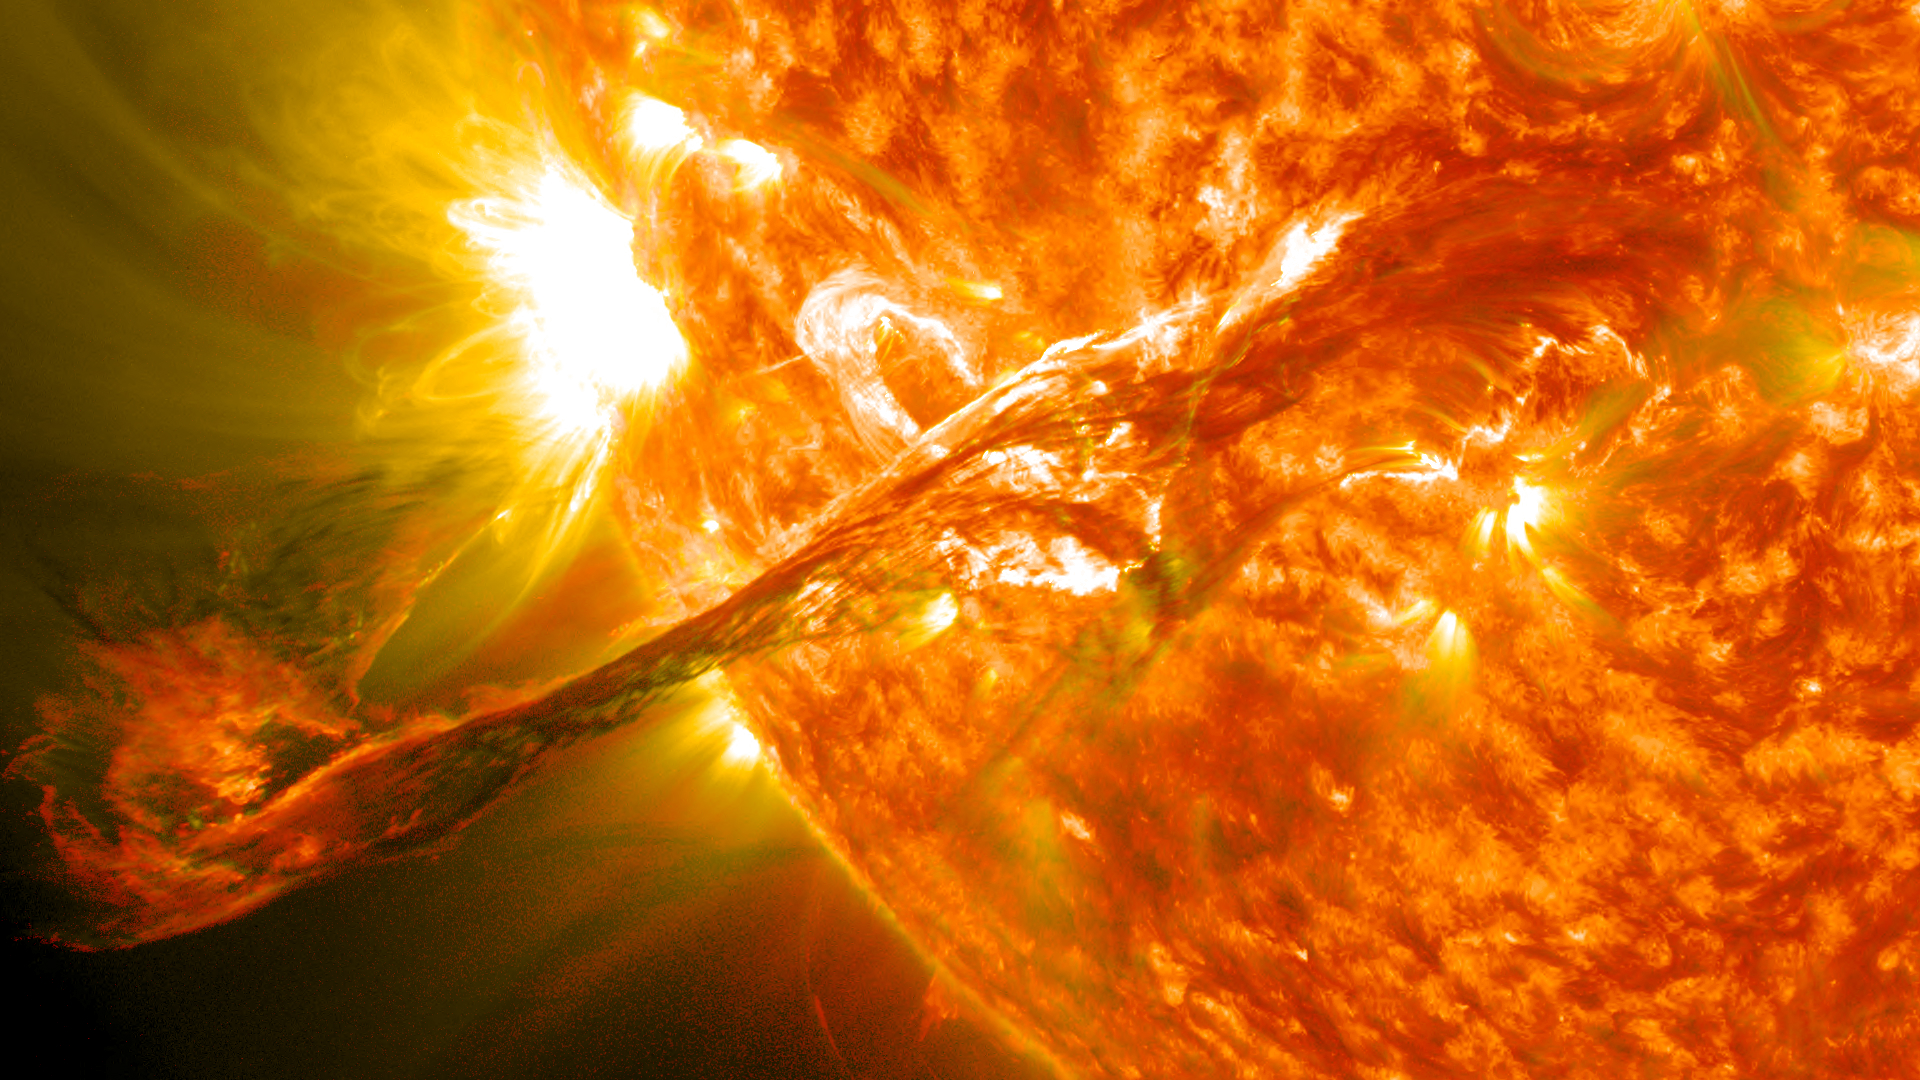 How do we study the Sun?